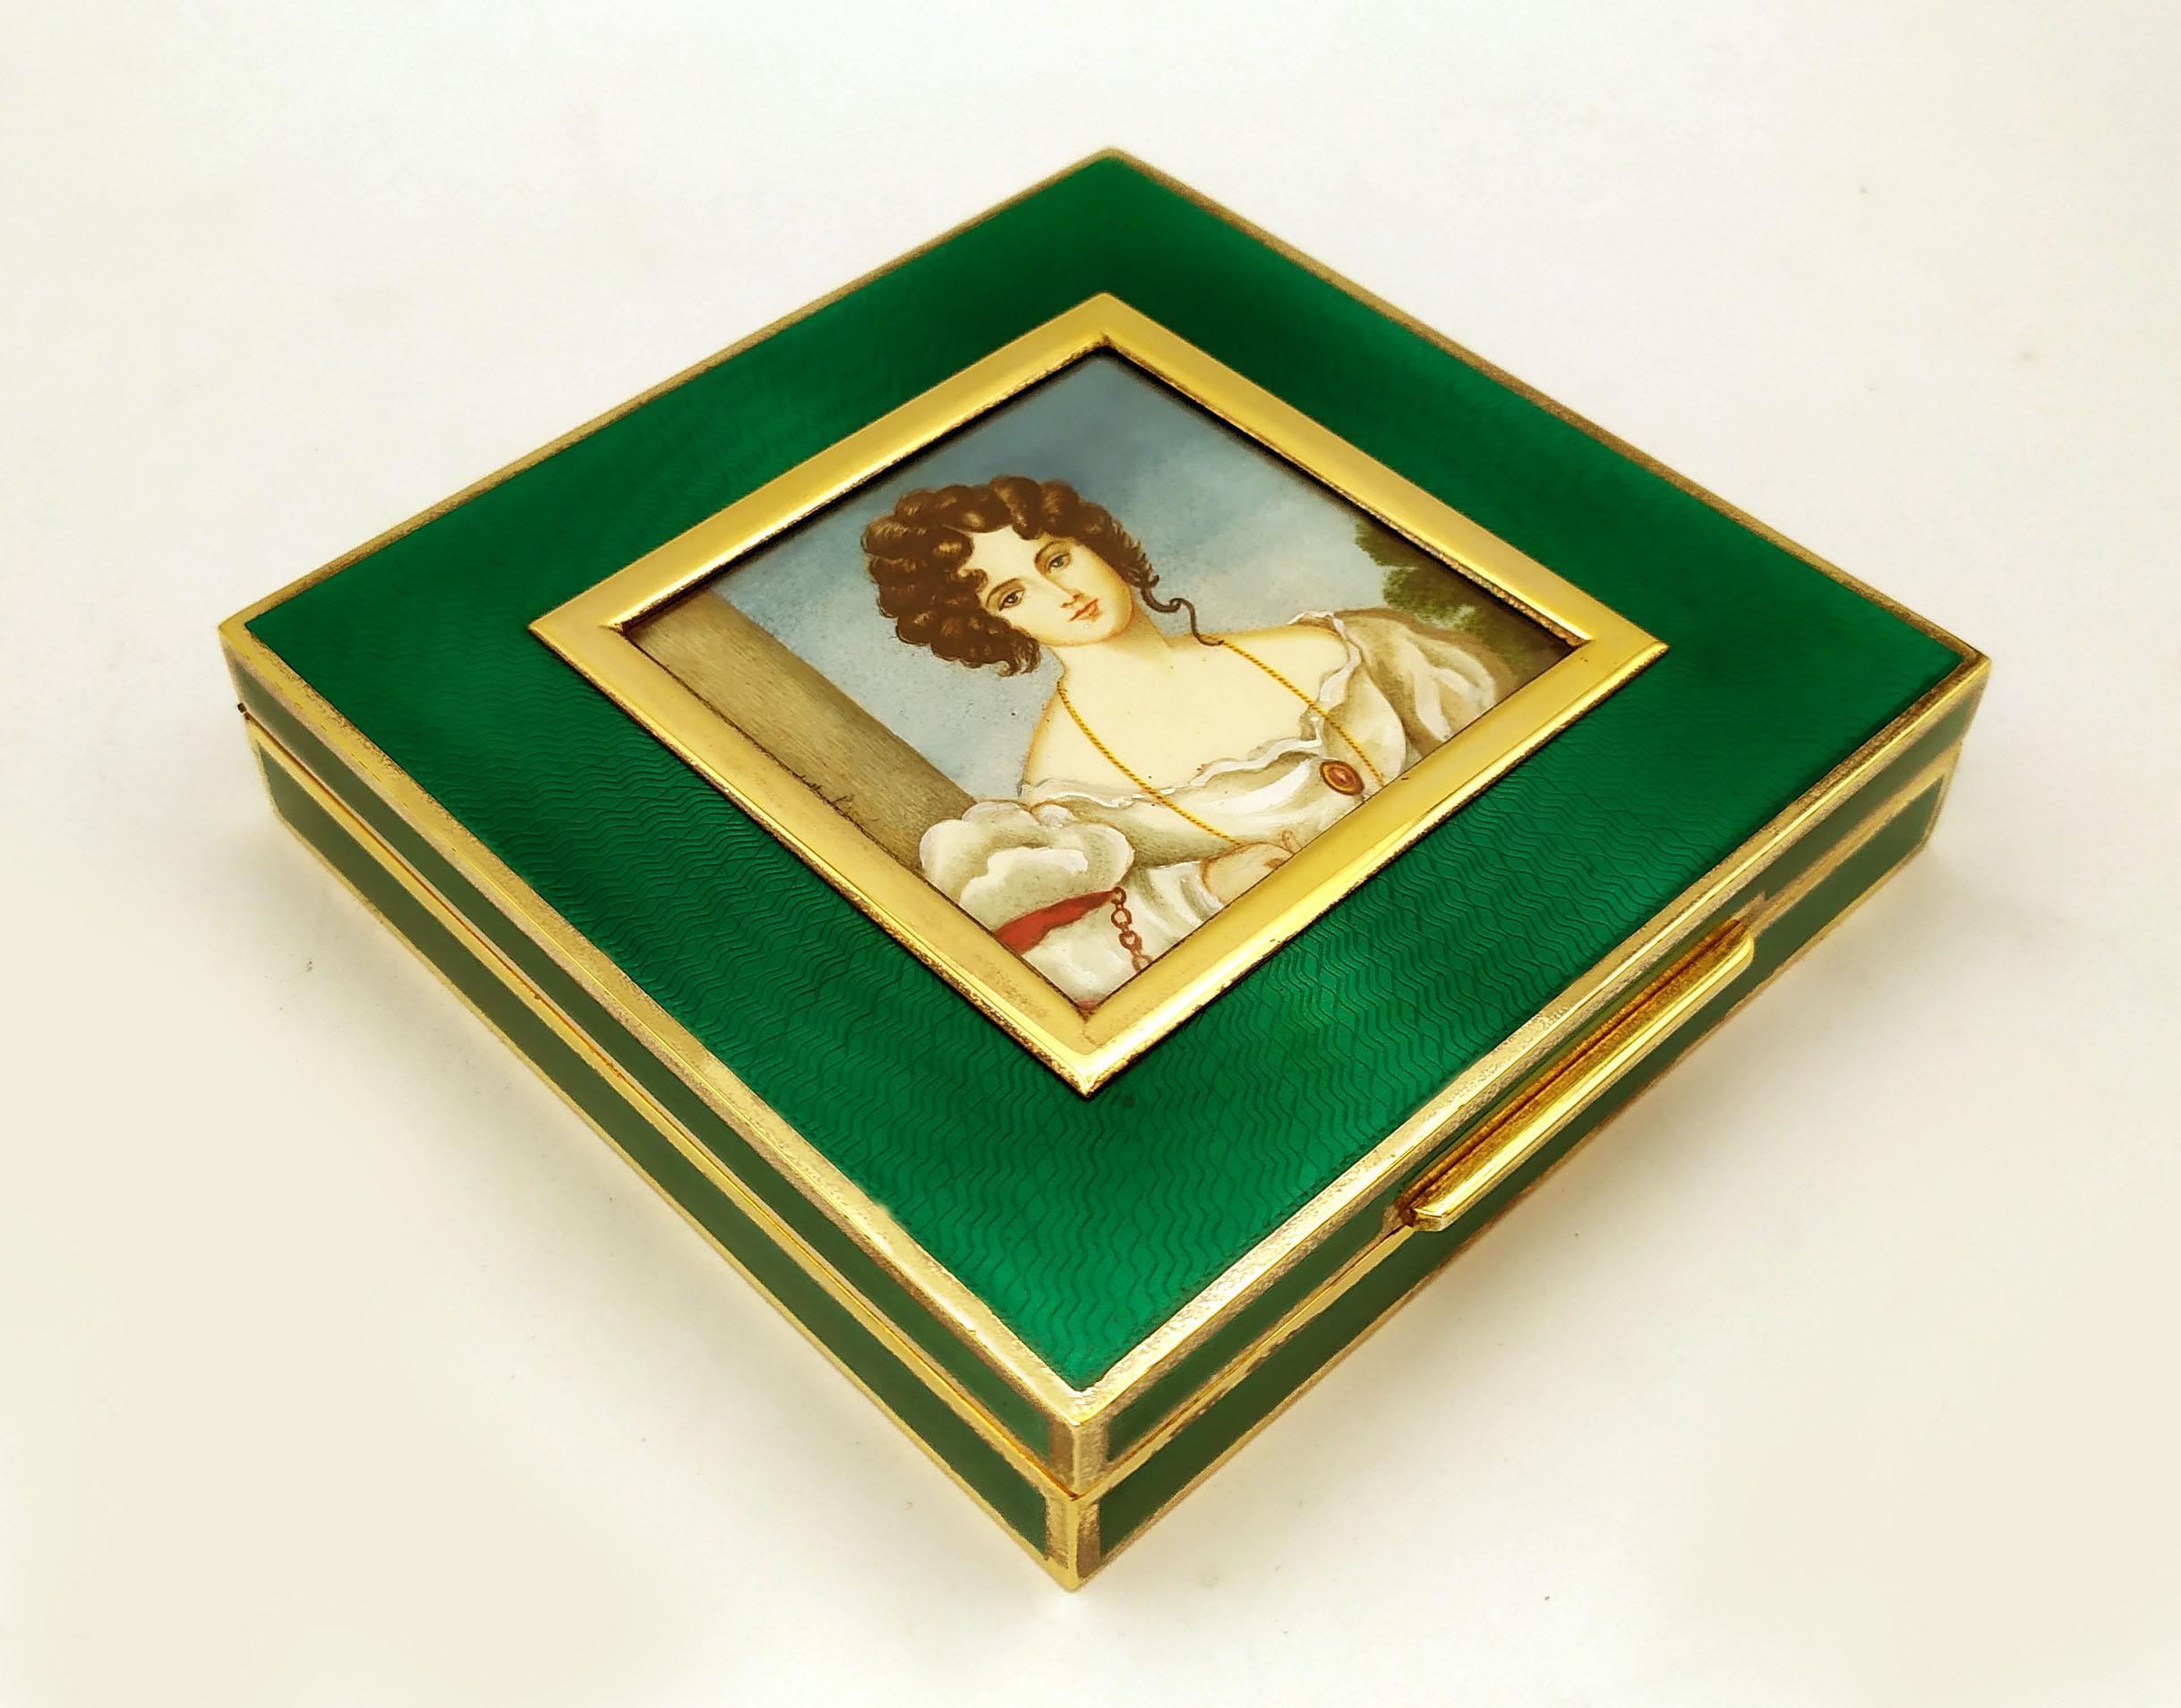 Boîte carrée en argent 925/1000 plaqué or avec émail cuit translucide sur guillochè également sur les côtés. Au centre, une magnifique miniature à la détrempe peinte à la main sur une assiette en ivoire végétal représentant le portrait d'une dame du